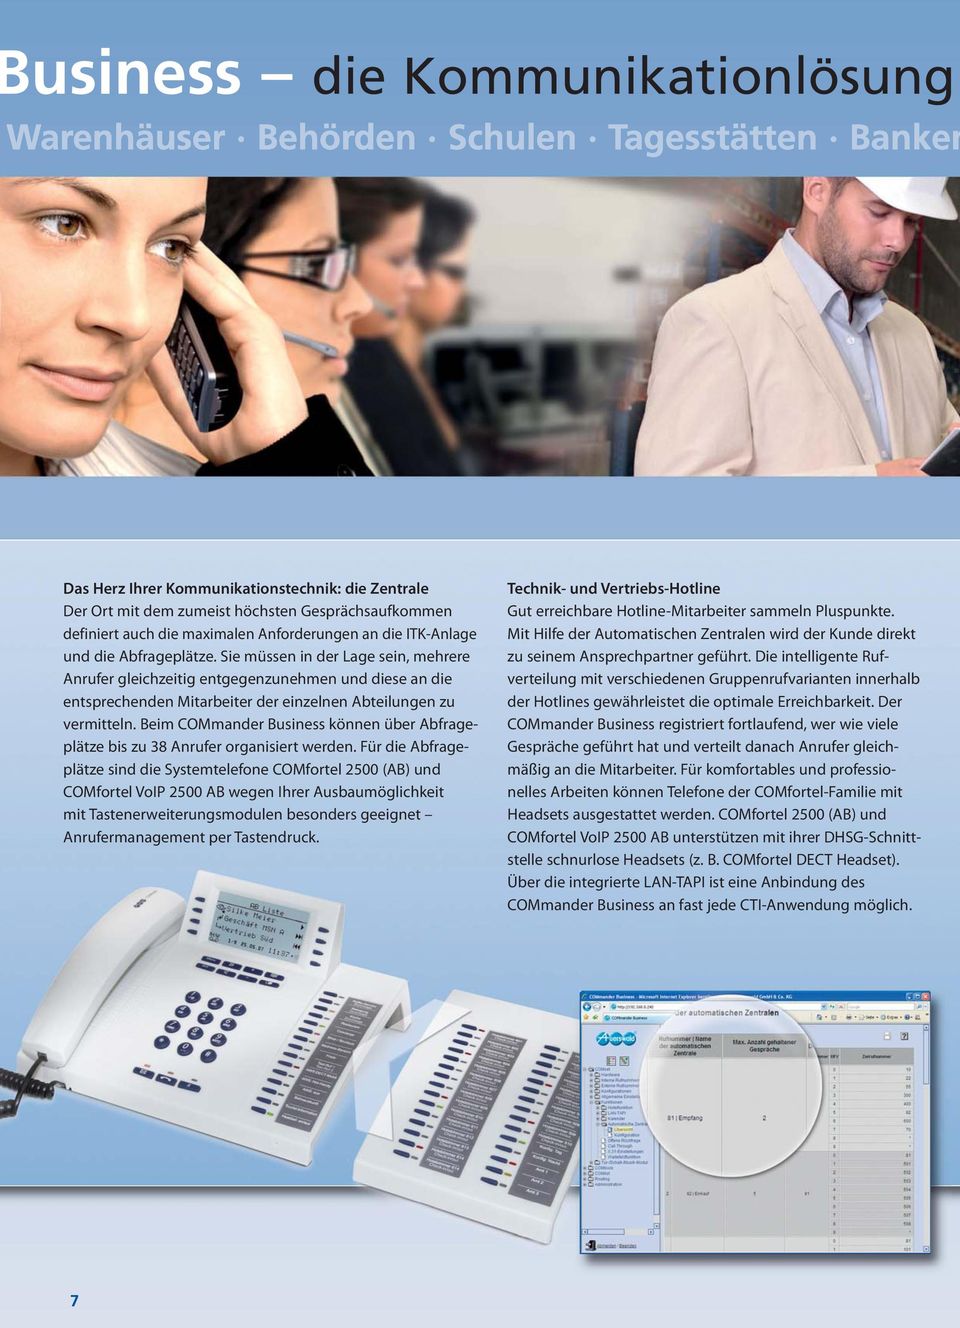 Beim COMmander Business können über Abfrage - plätze bis zu 38 Anrufer organisiert werden.